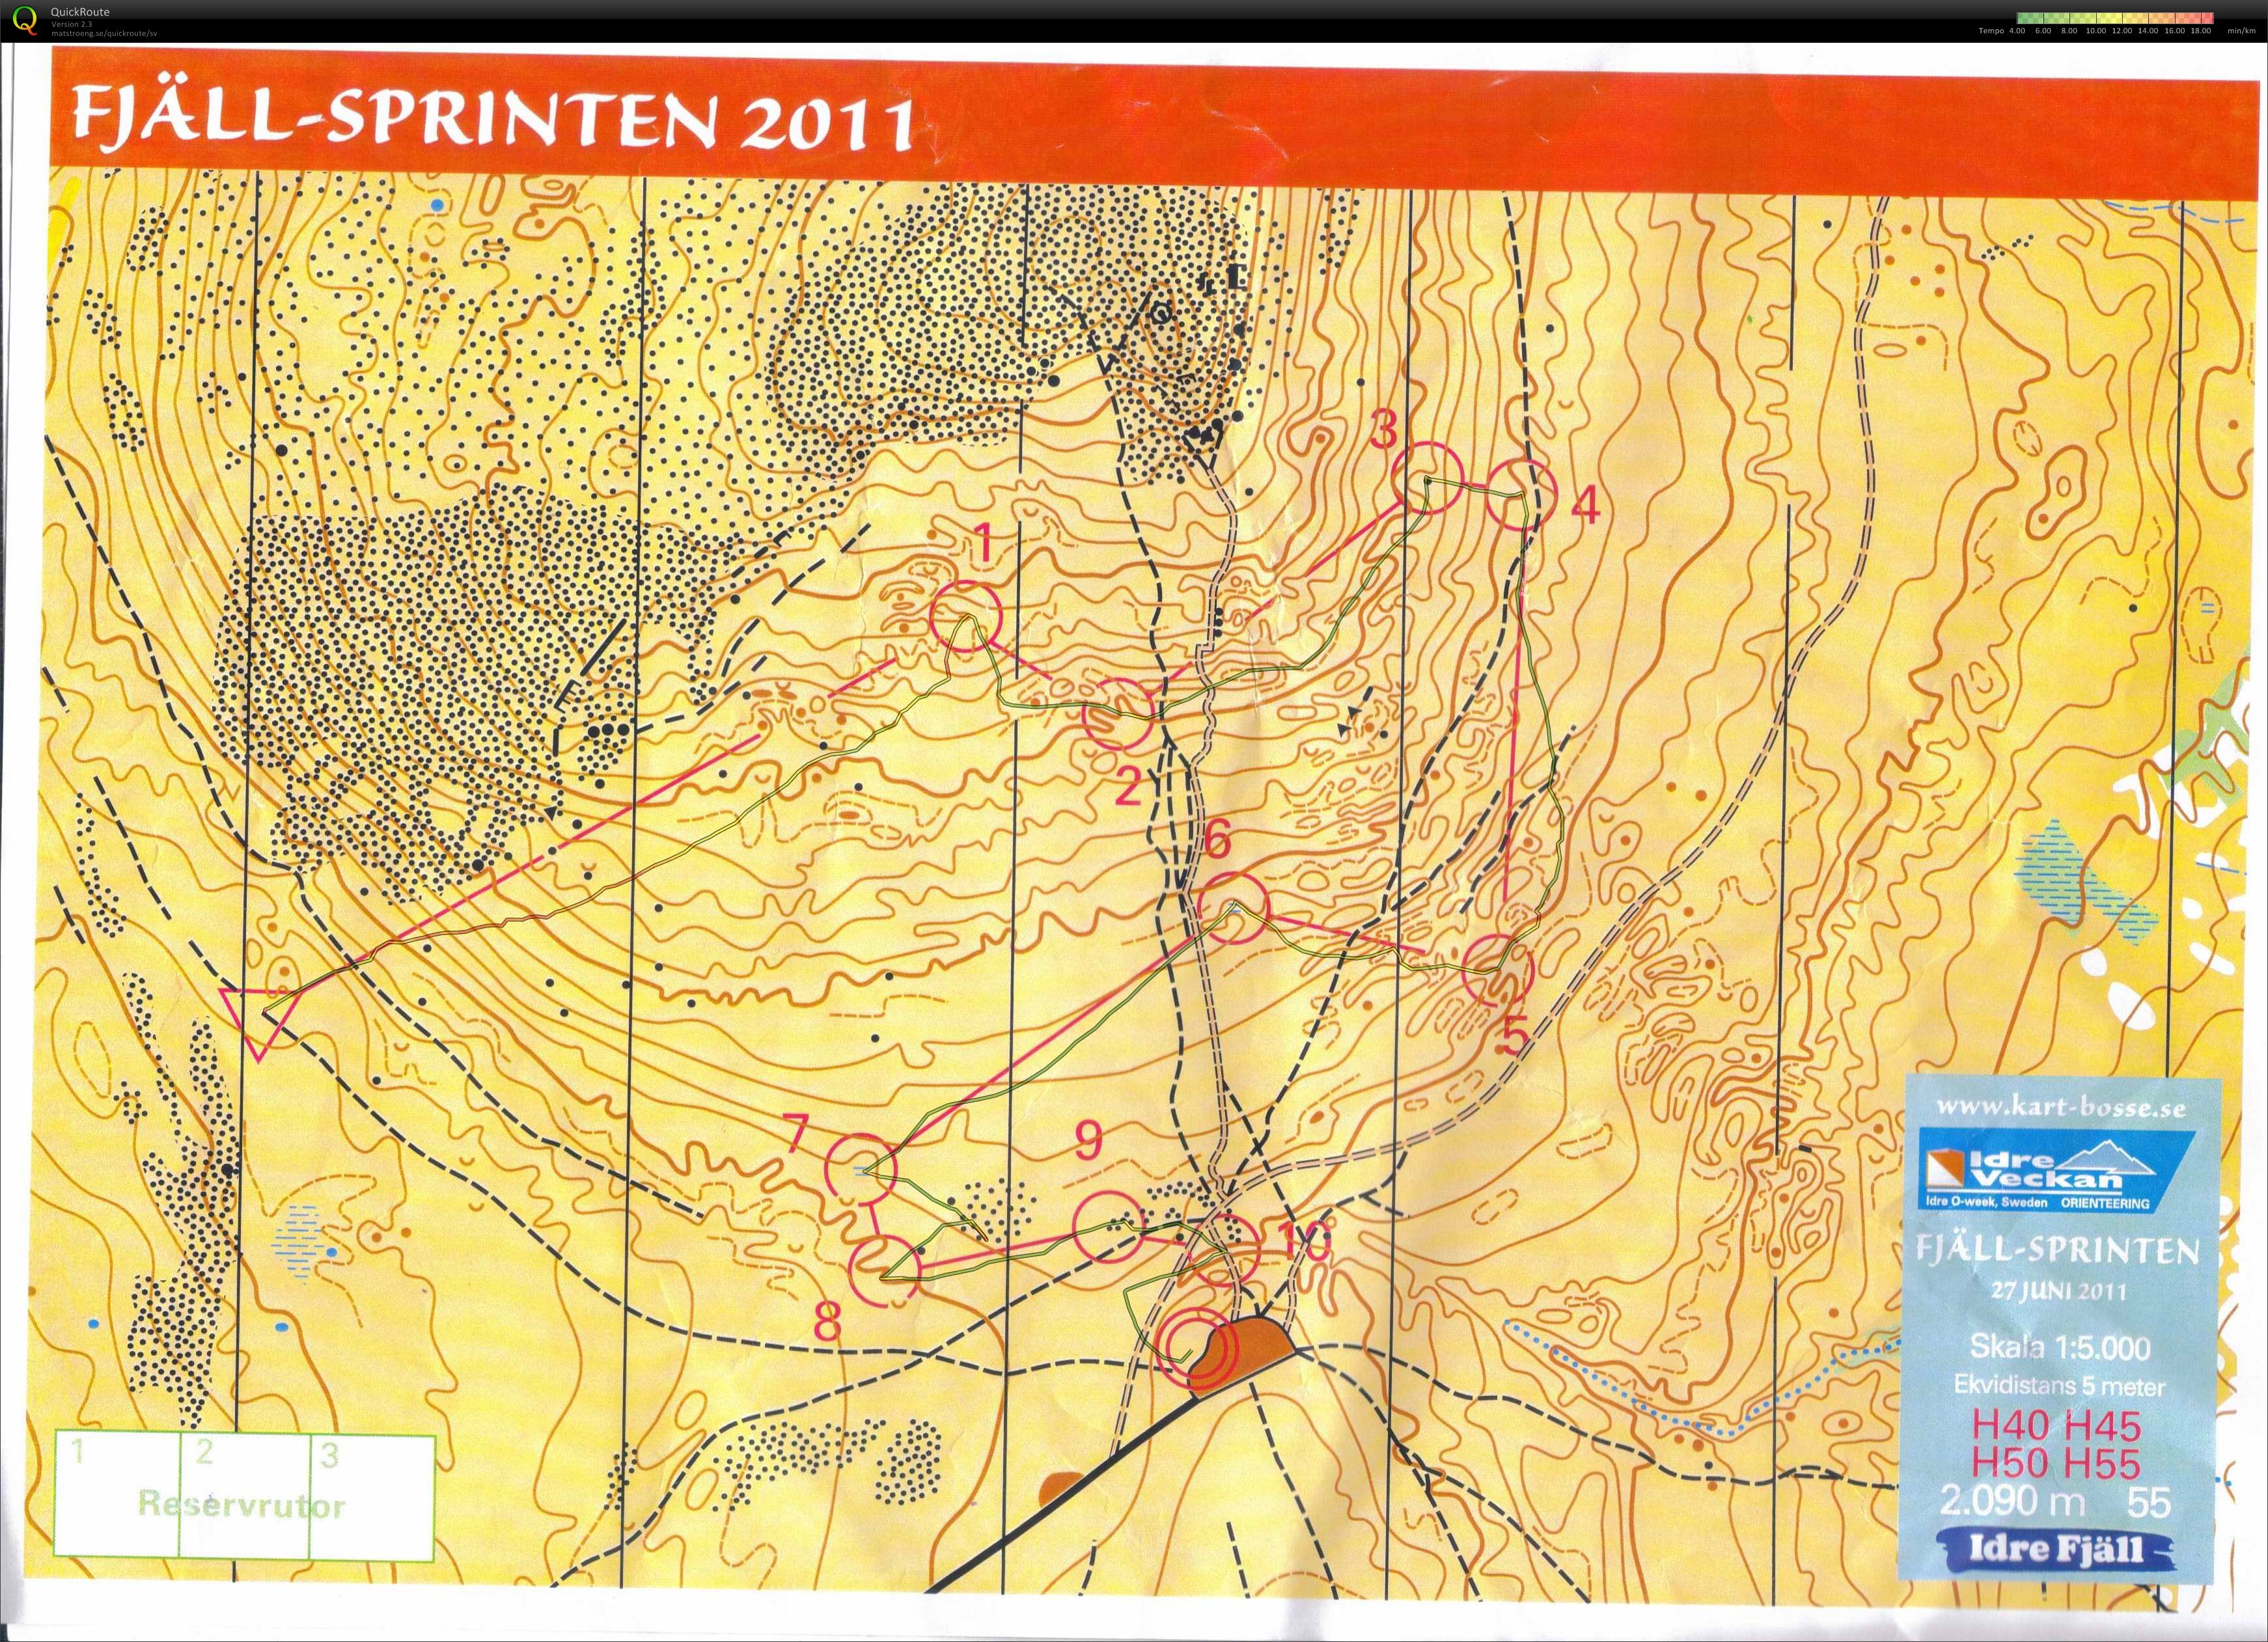 Idre fjällsprint (27-06-2011)